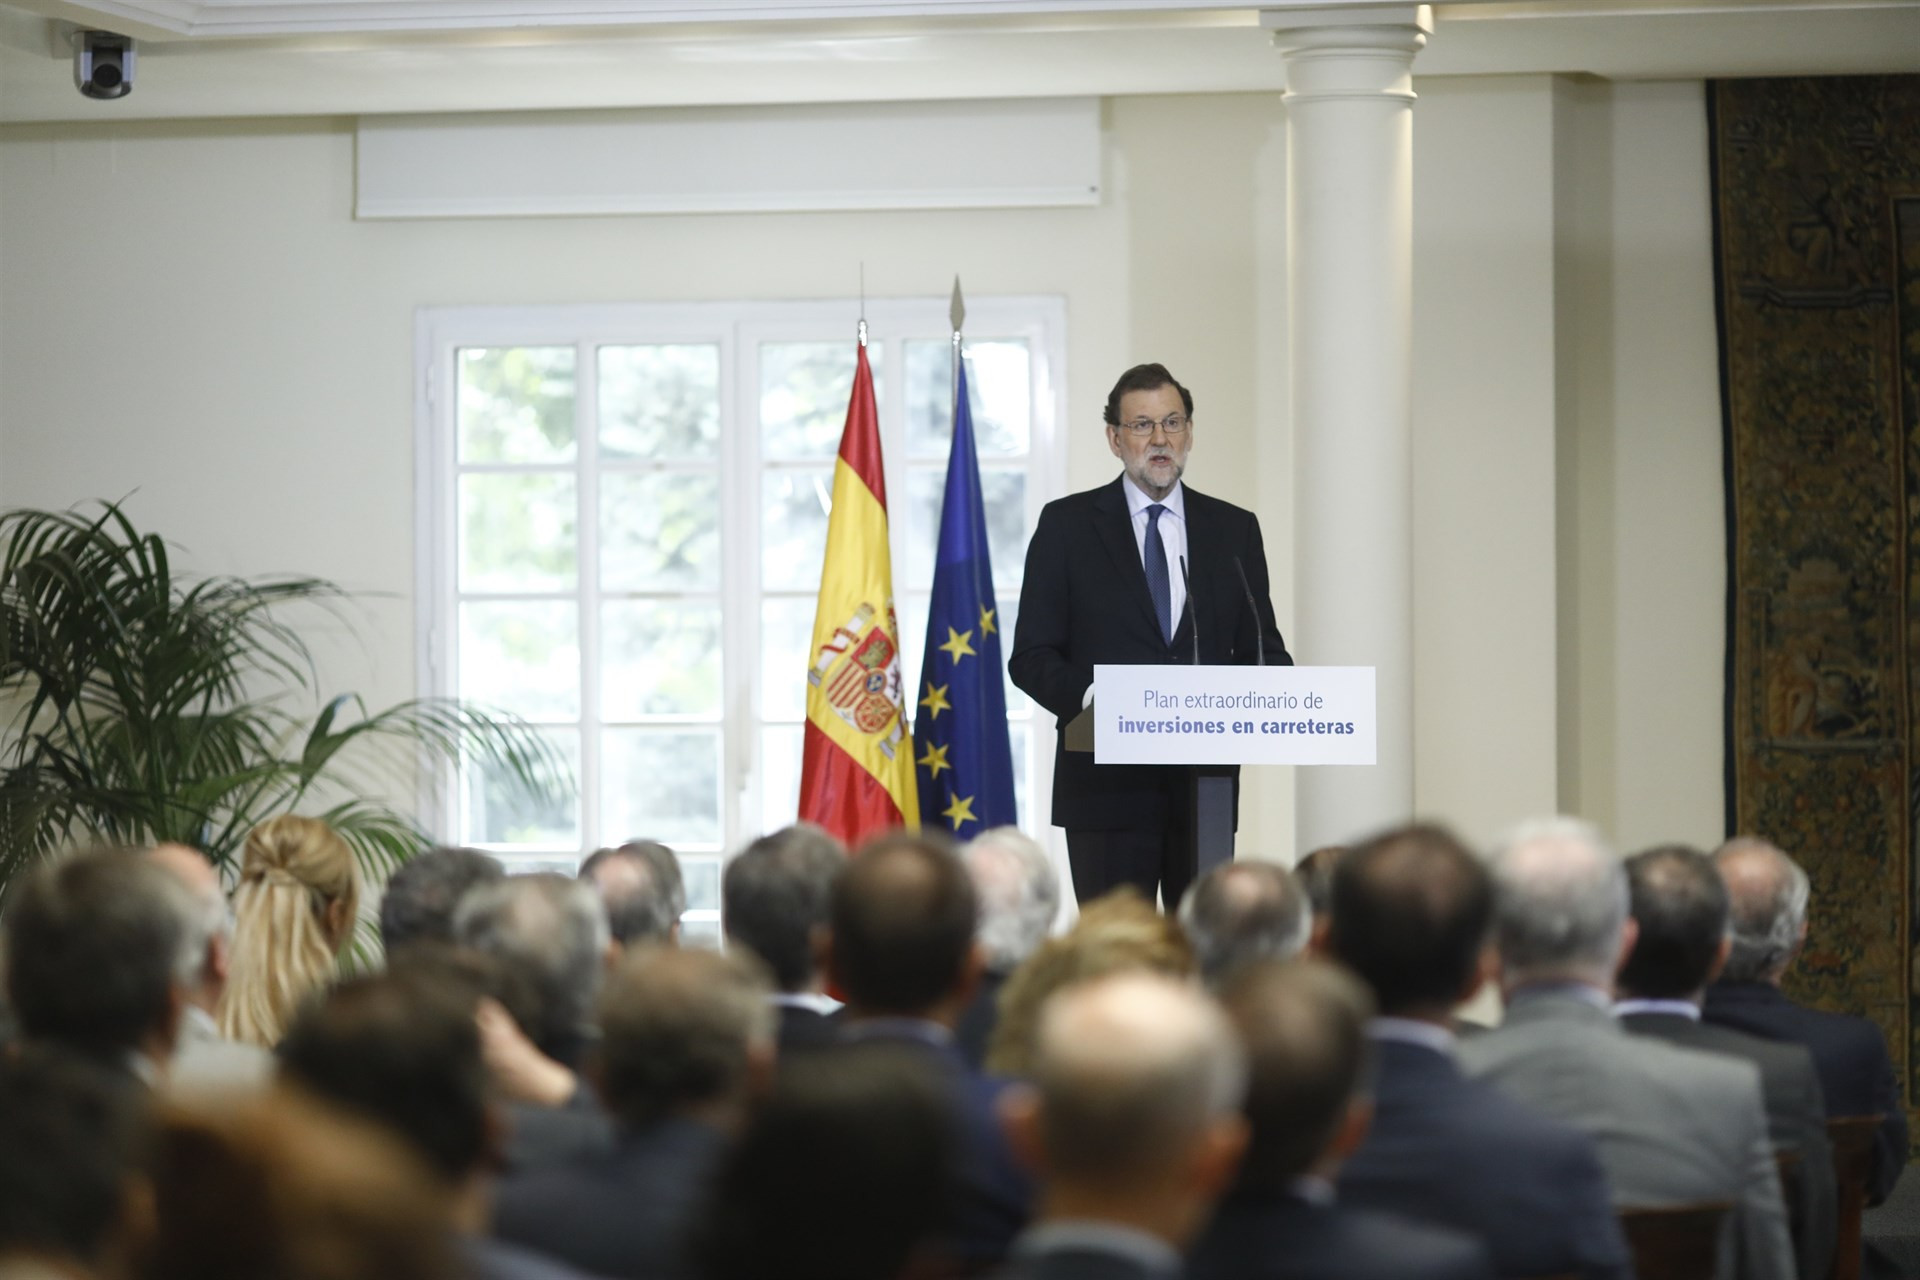 Rajoy presenta plan extraordinario inversiones carreteras